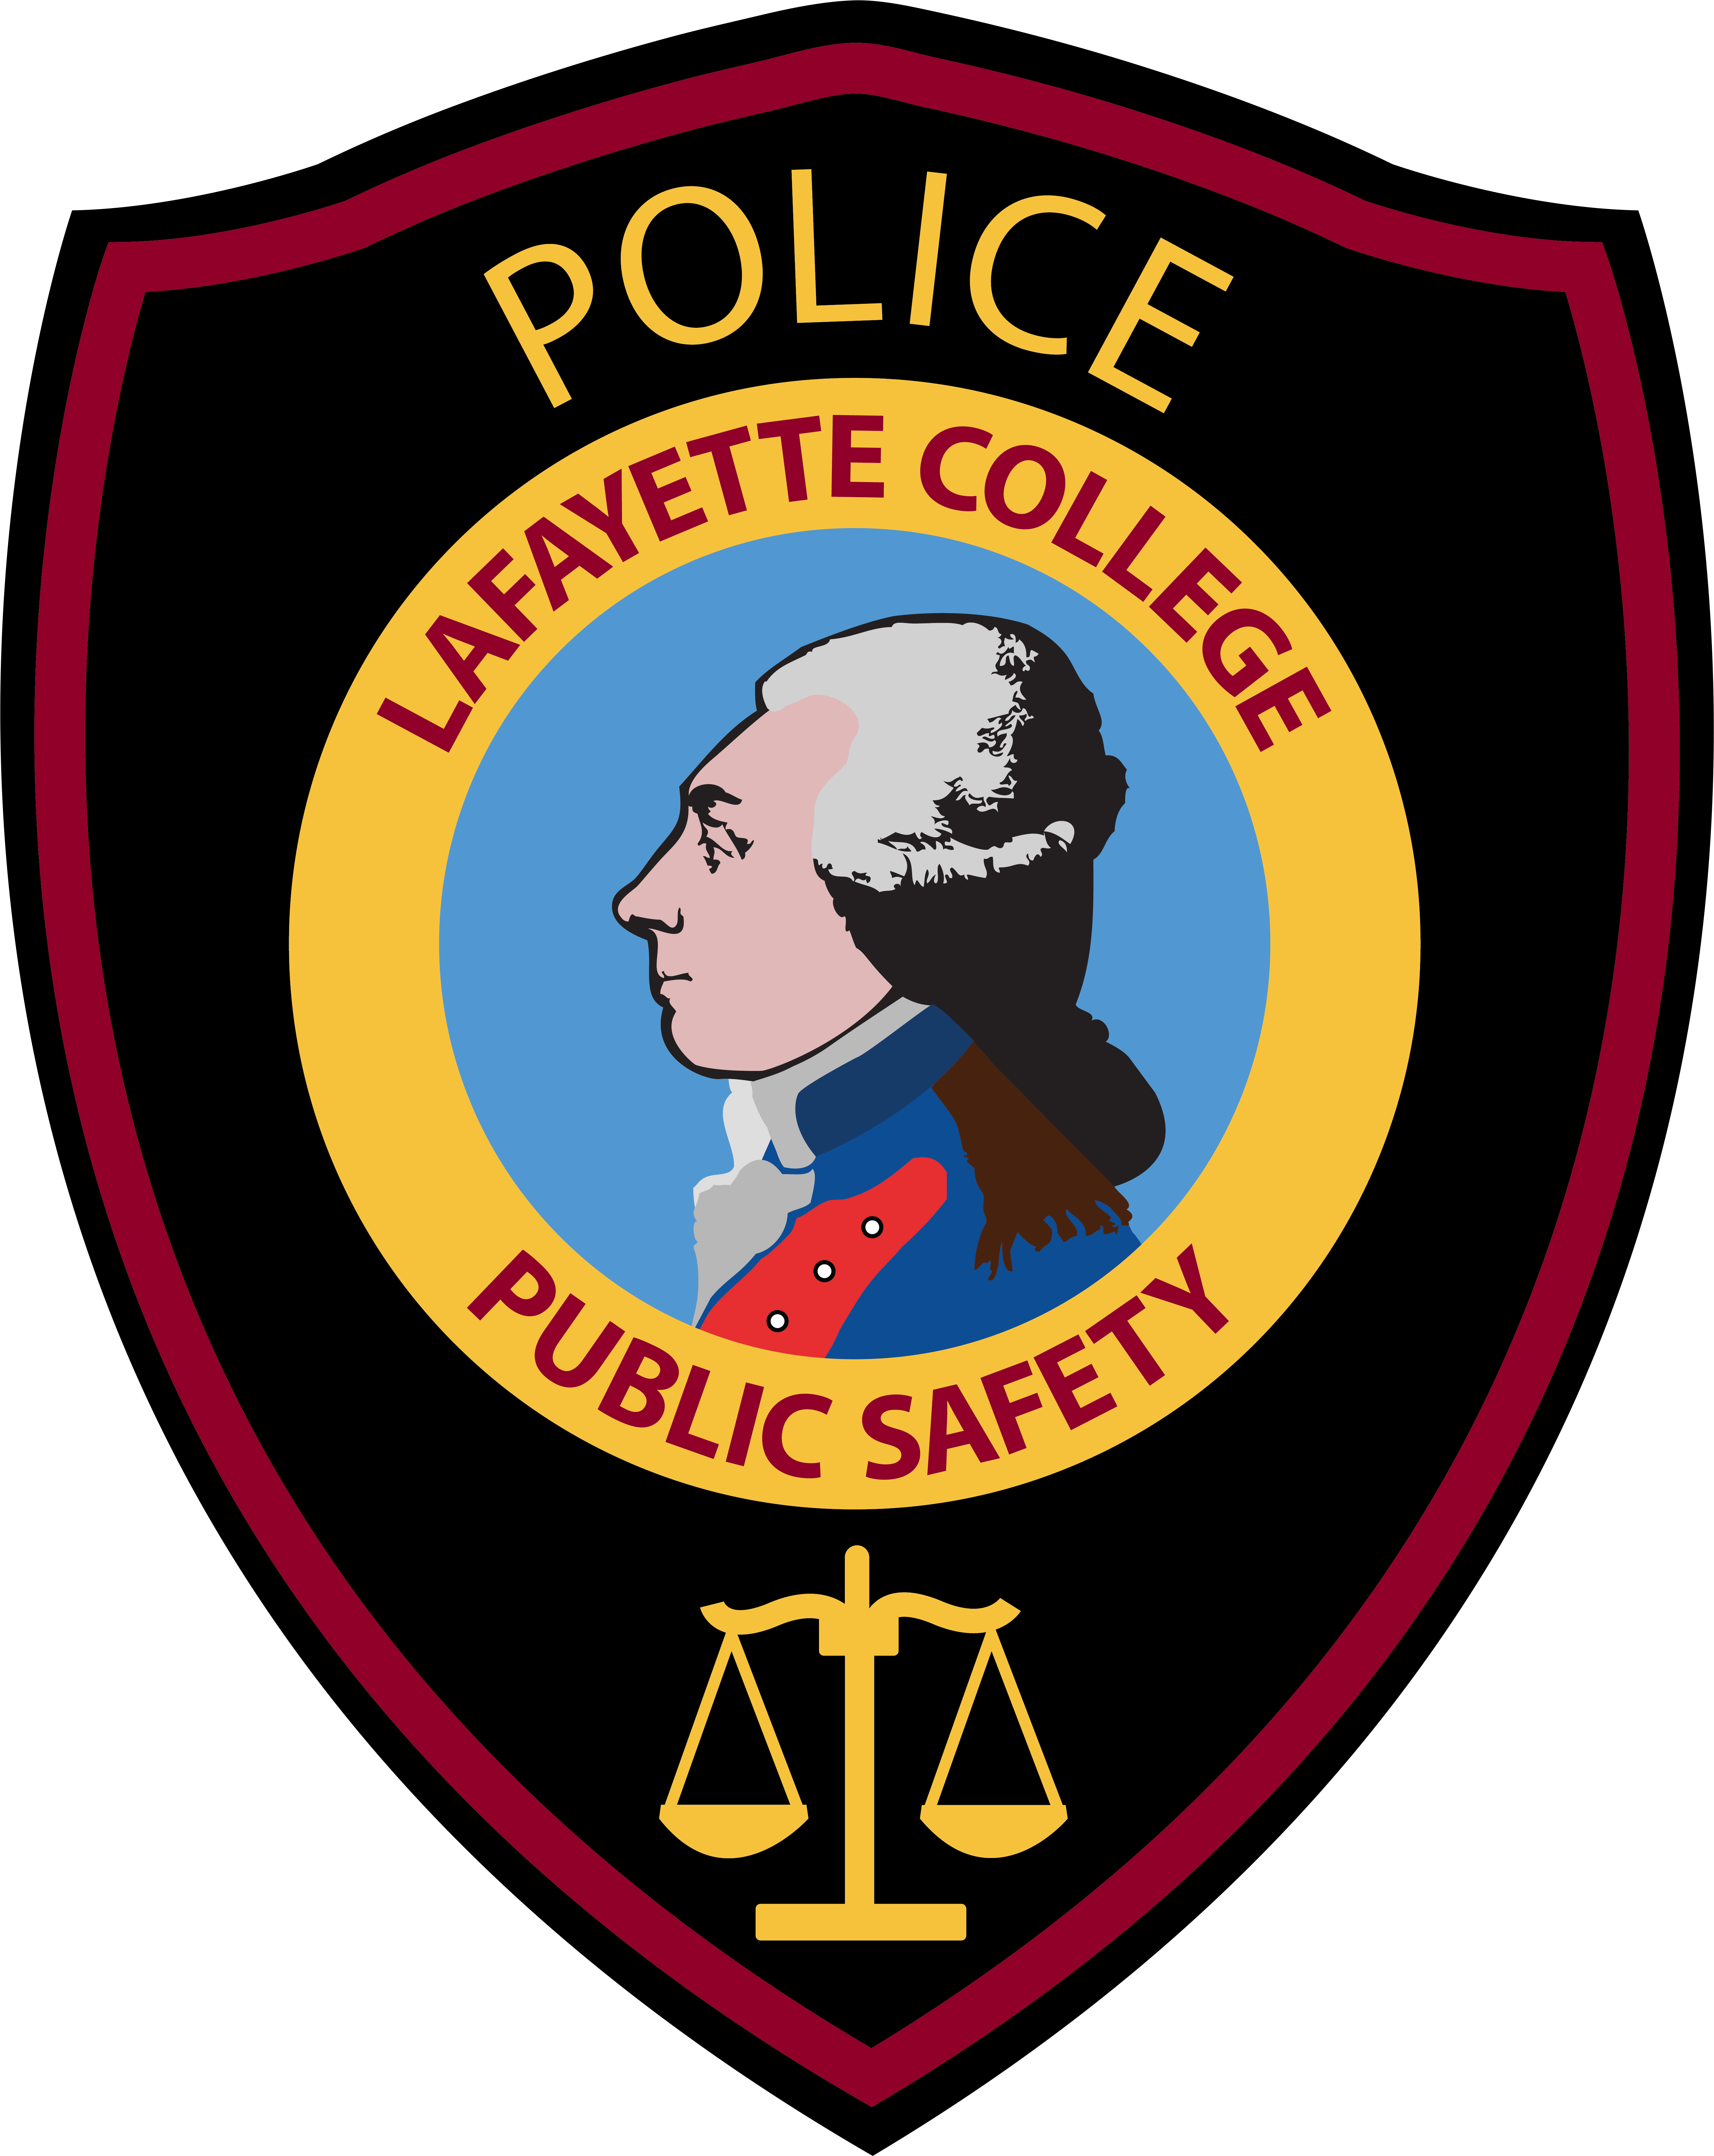 Public Safety Services - Emblem (5778x7176)